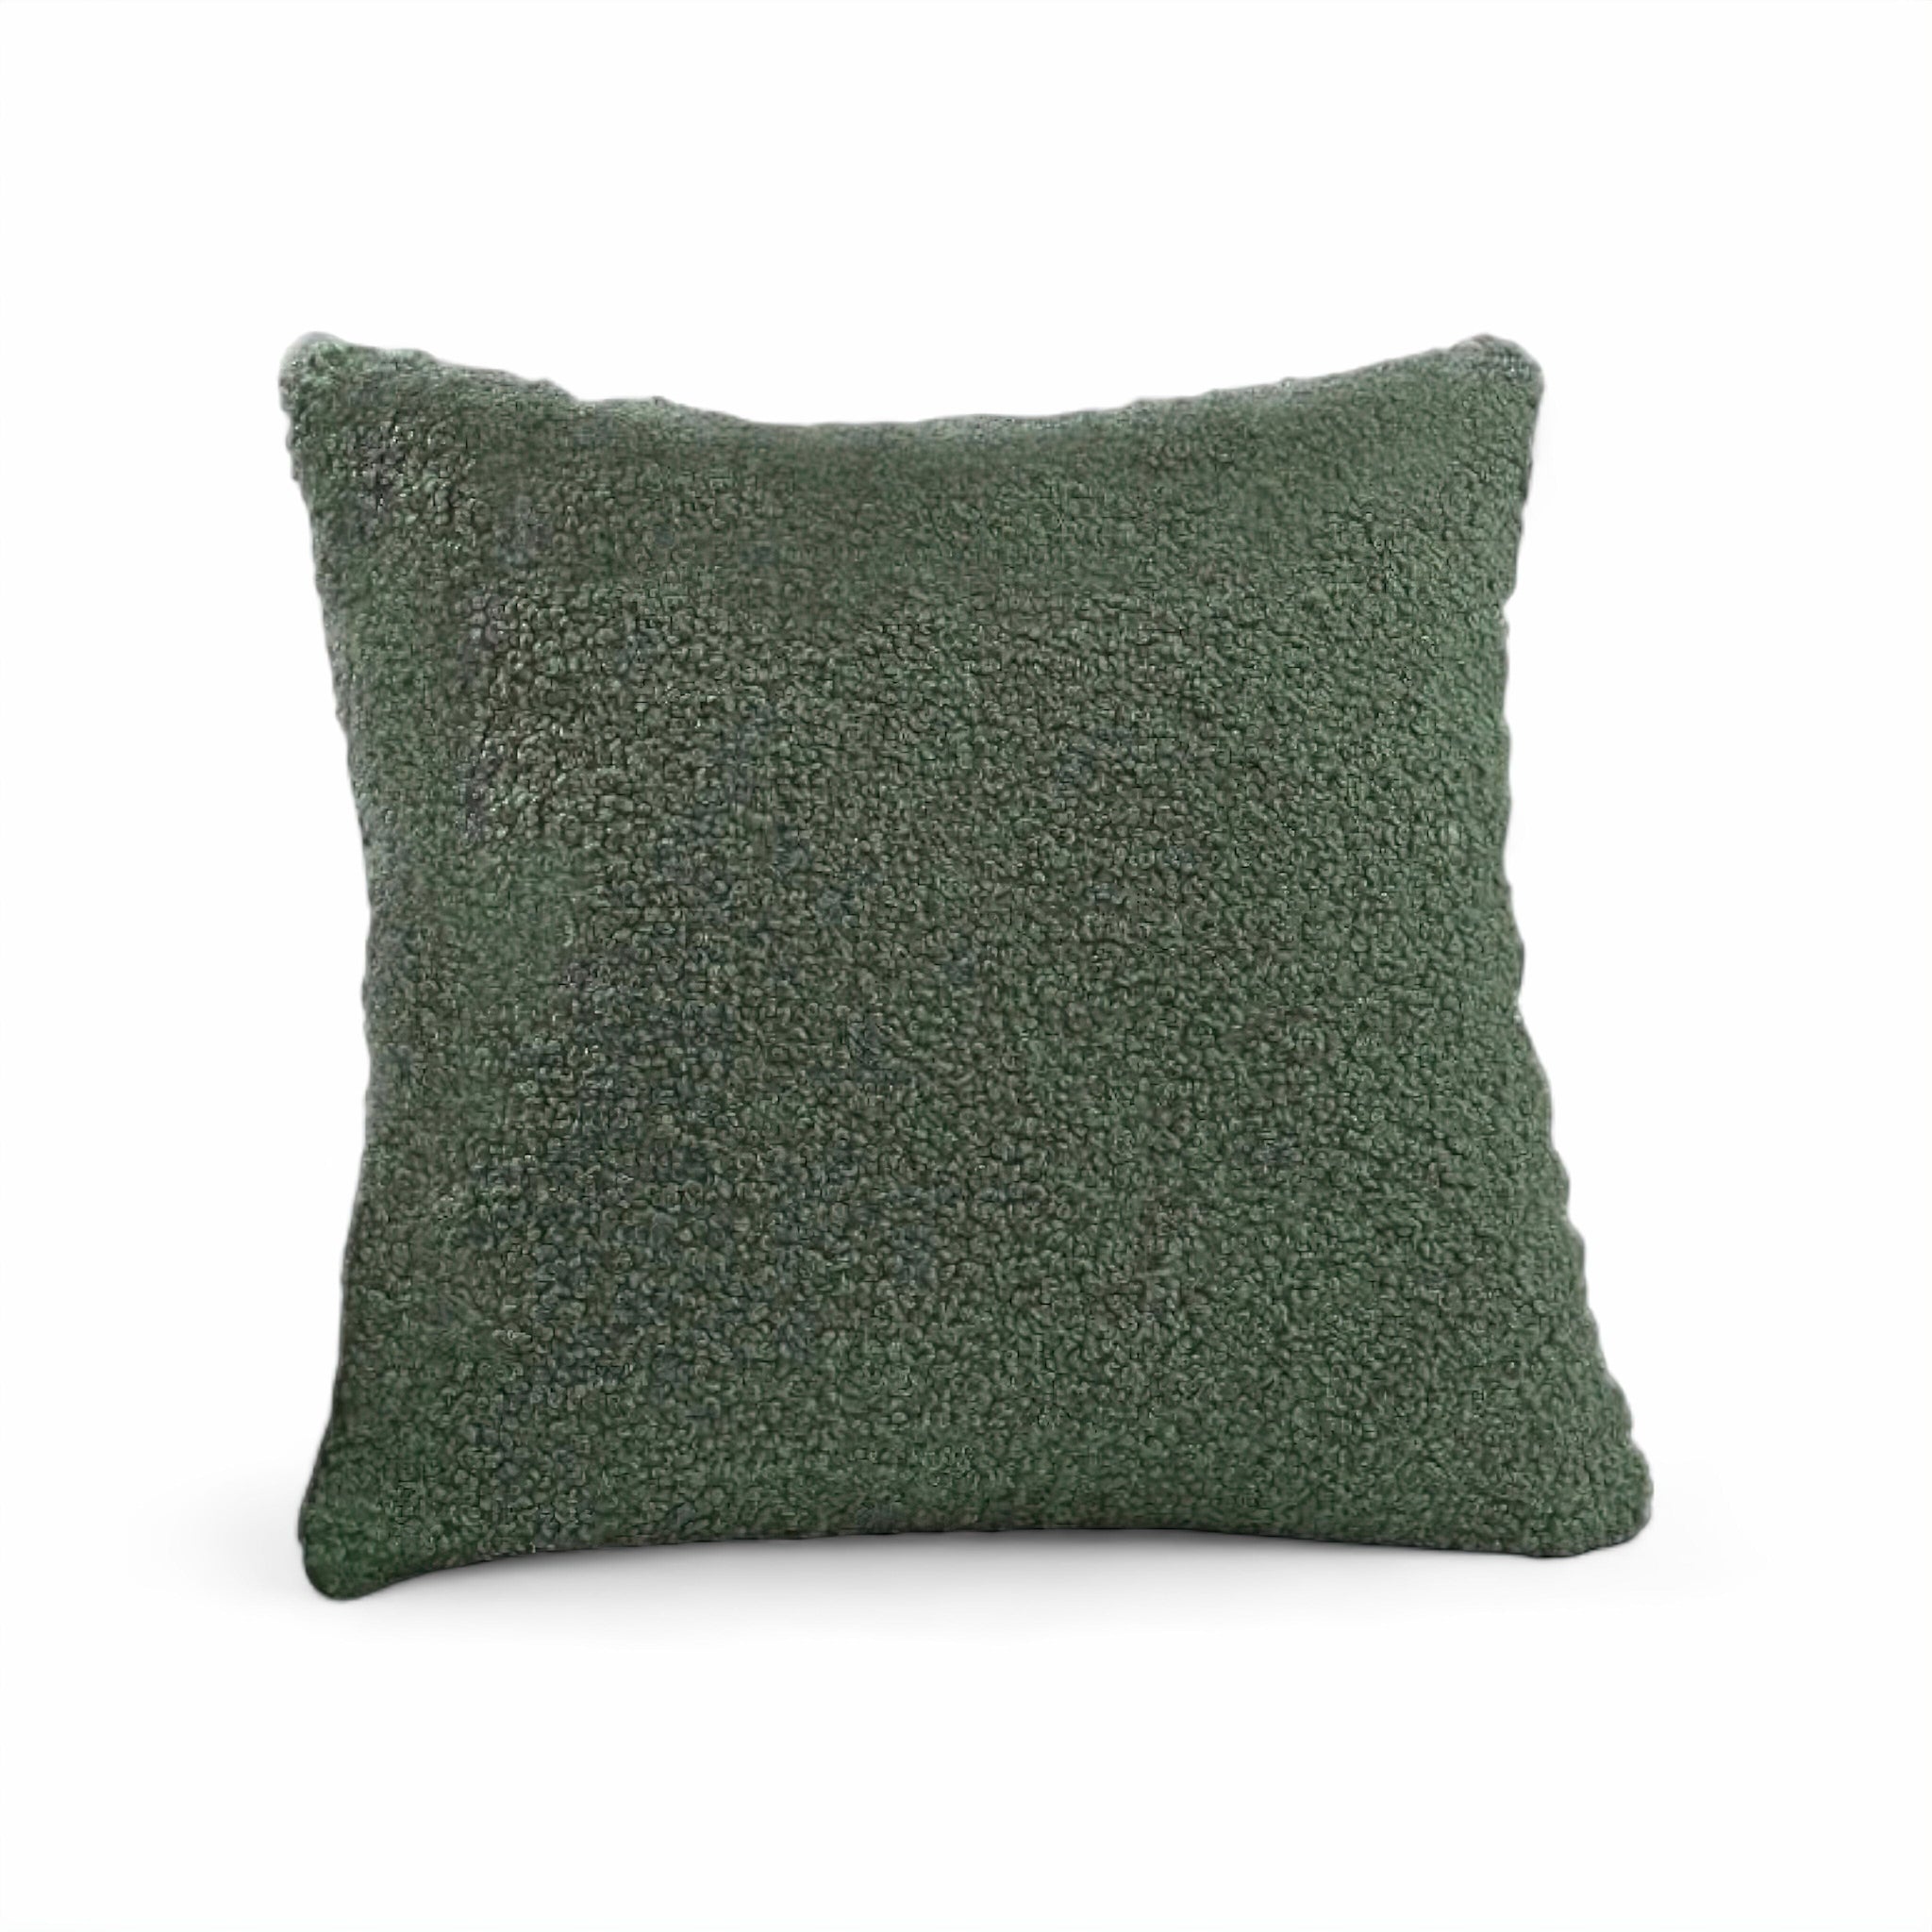 Romeo Cushion Cover Green 30 x 50cm 